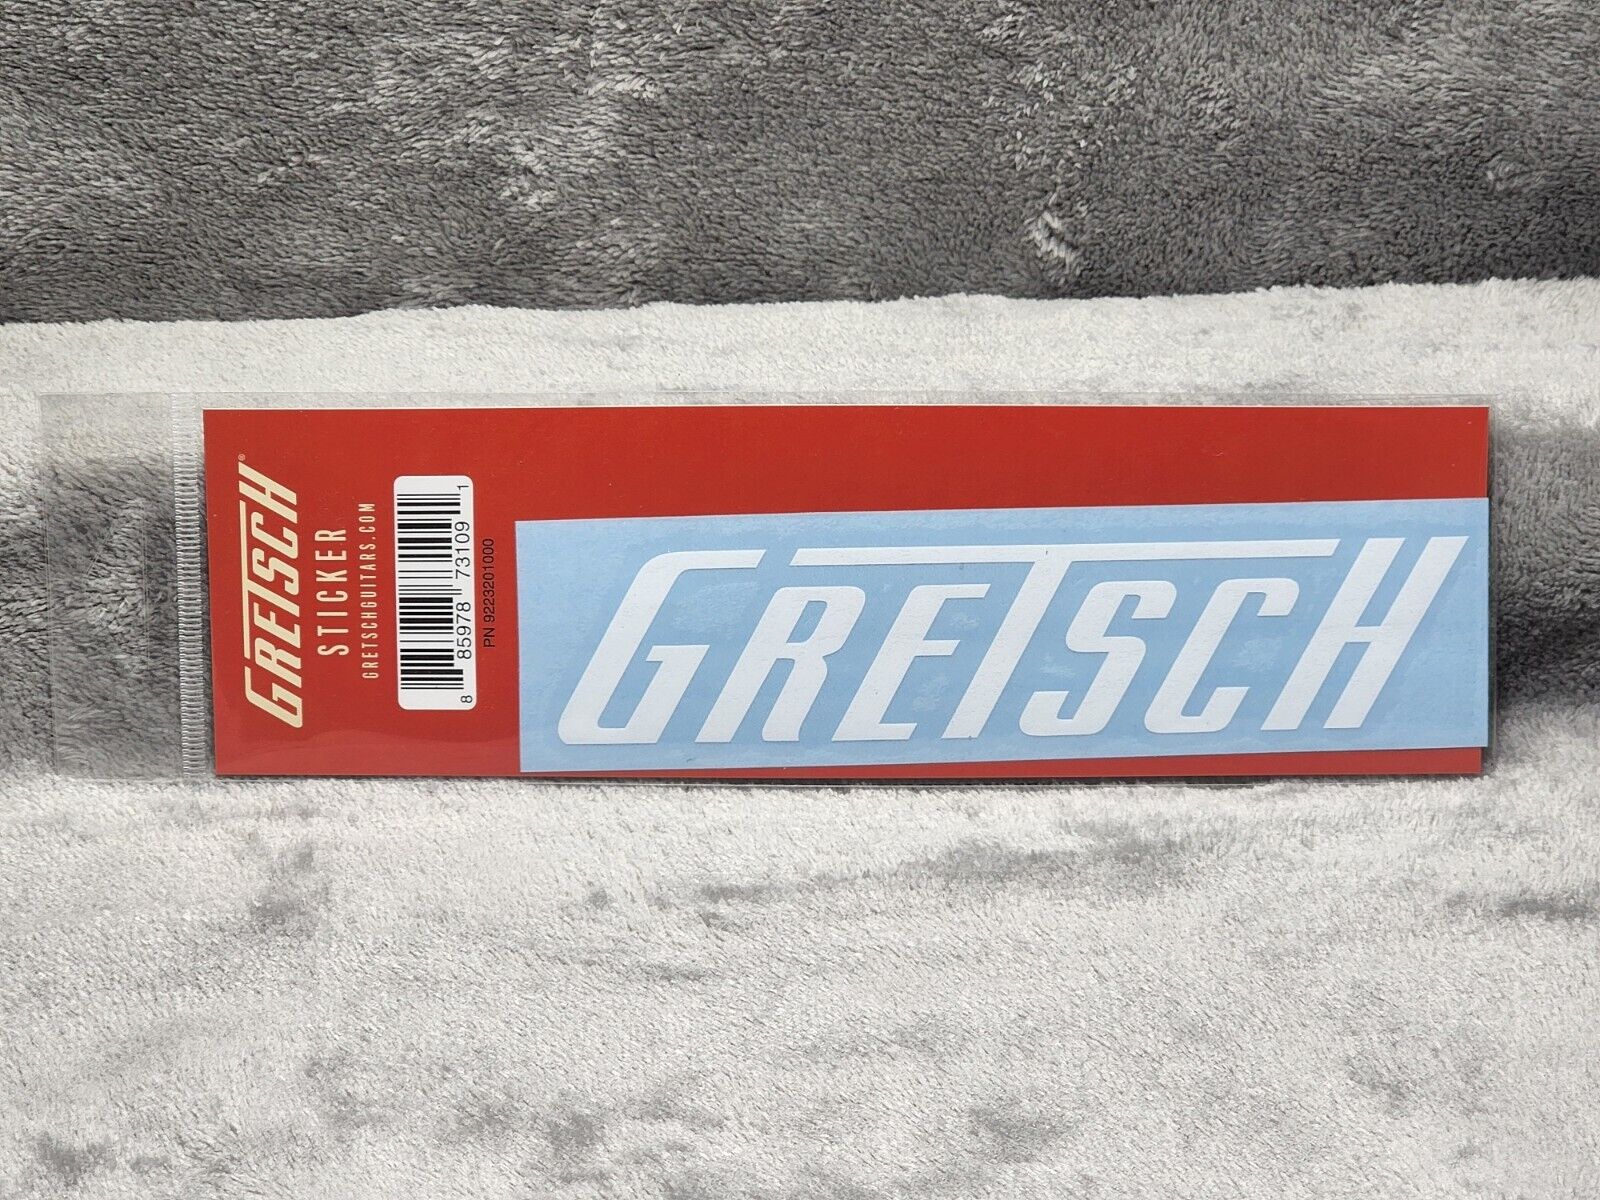 Gretsch Guitar Sticker ORIGINAL GENUINE